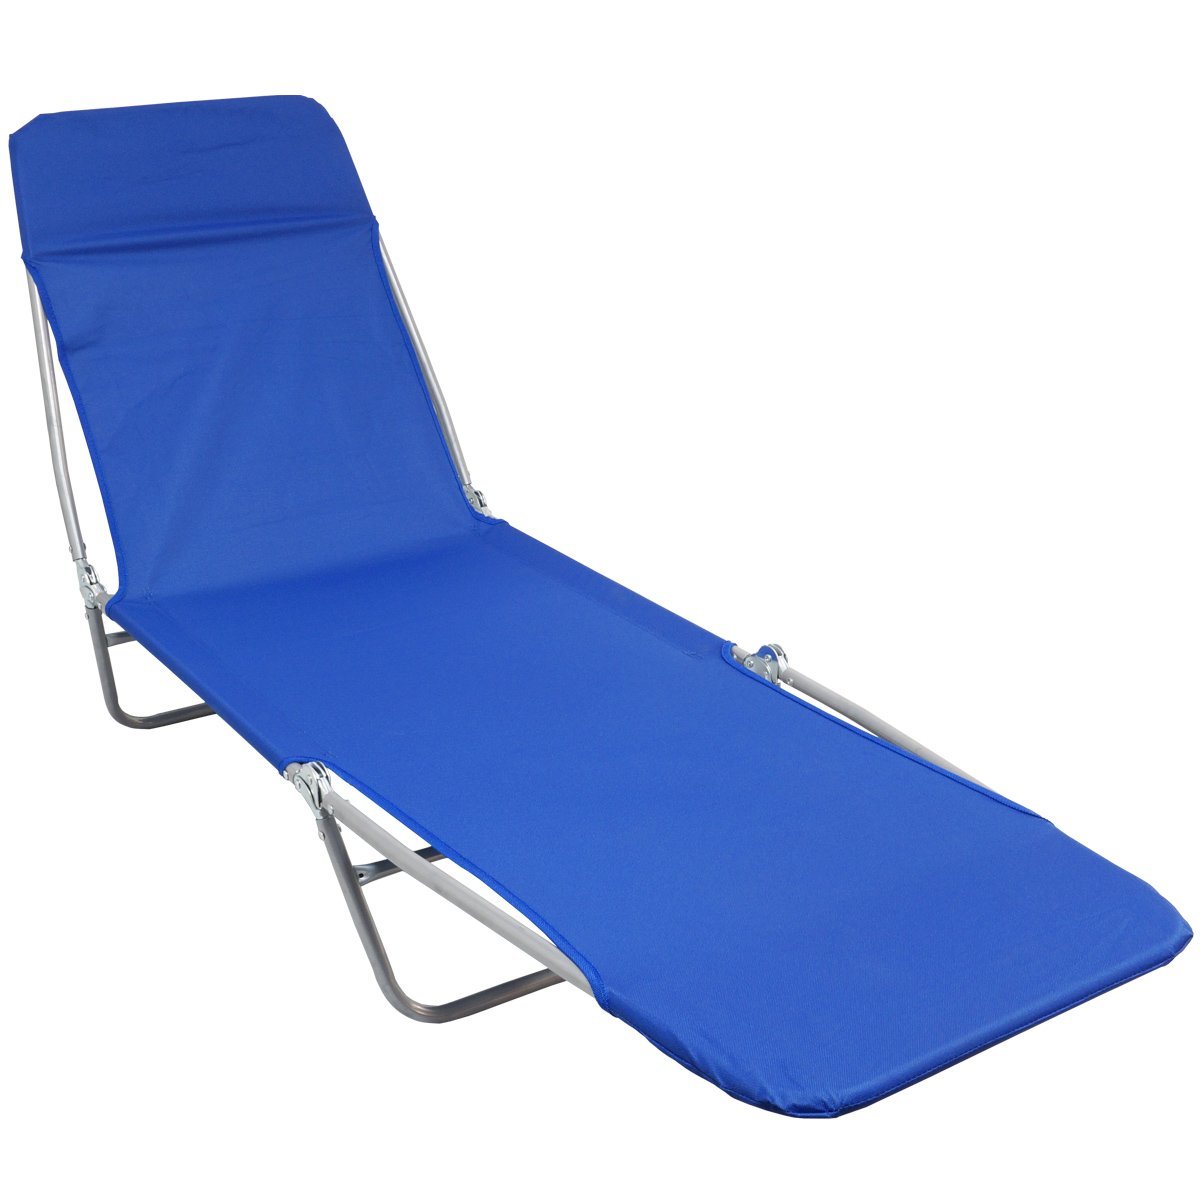 Cadeira Espreguiçadeira Dobrável 5 Posições Textline Praia Piscina Camping Importway IWCET-001 Azul  - 1